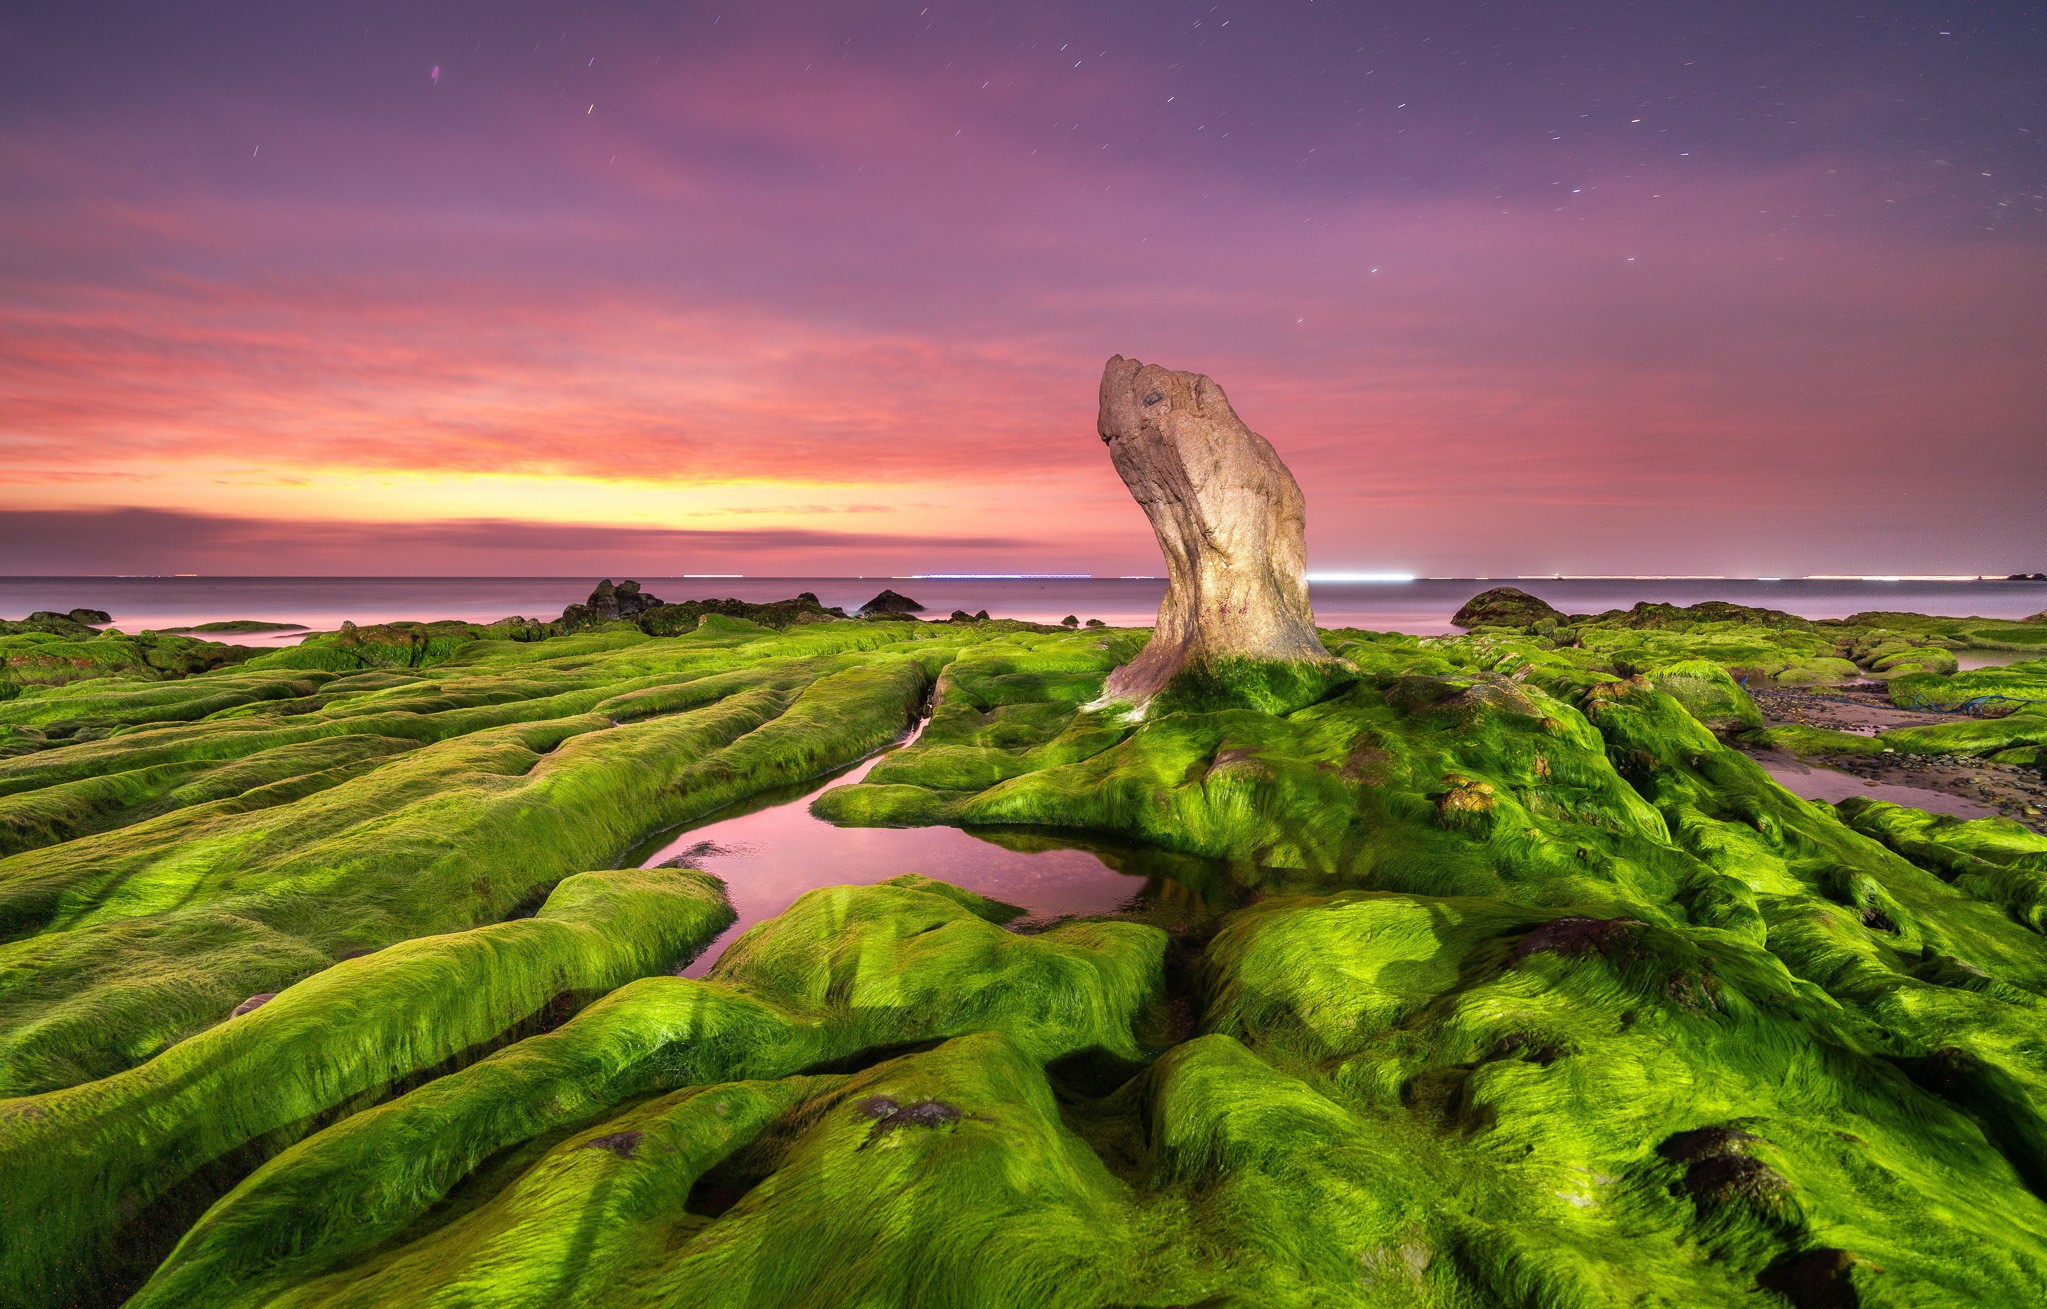 Sea Nature Purple Sky Sunset Rocks Seaweed Dusk Landscape 2047x1309